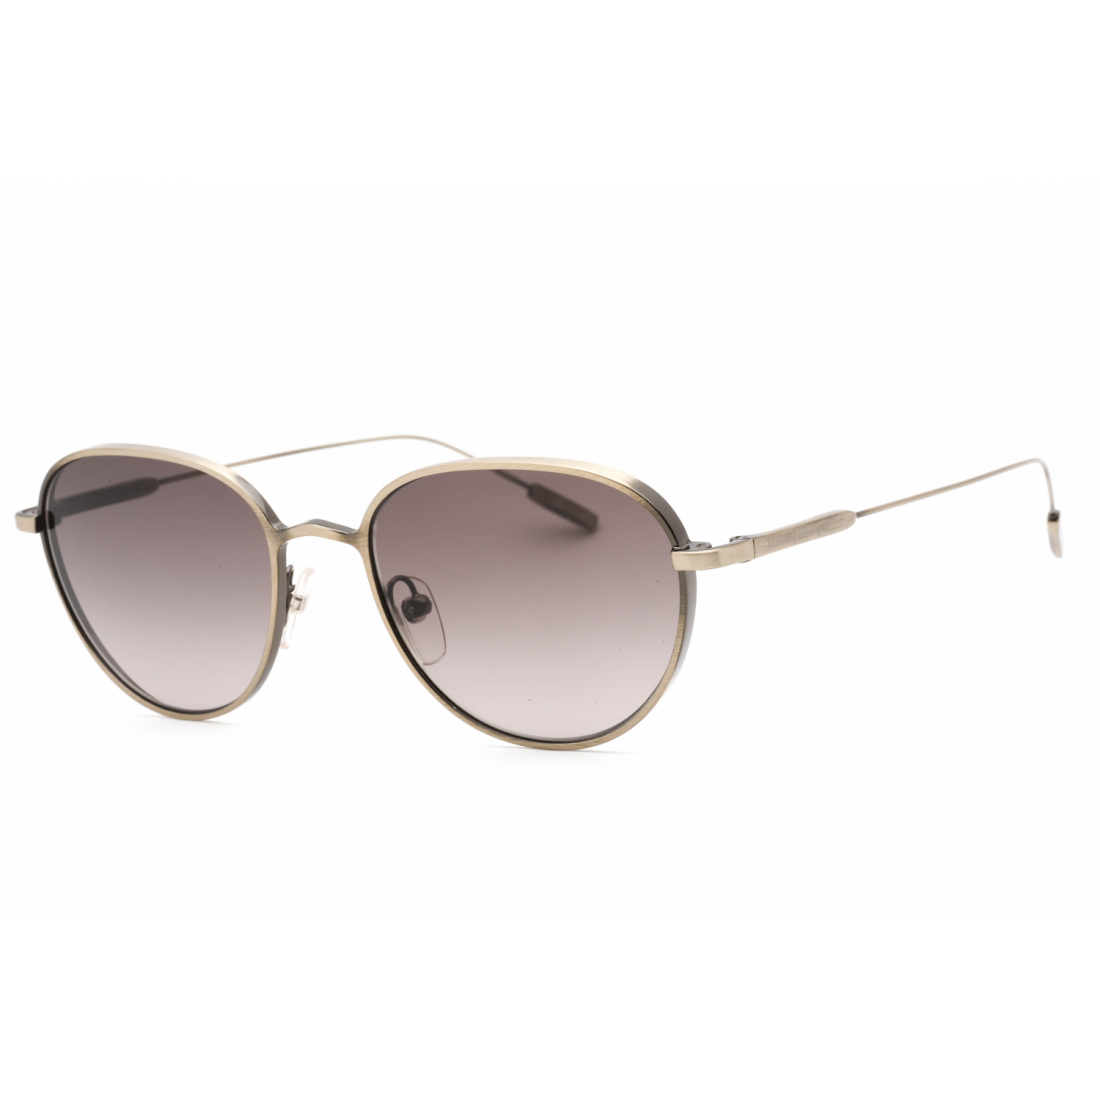 Men's 'EZ0208' Sunglasses